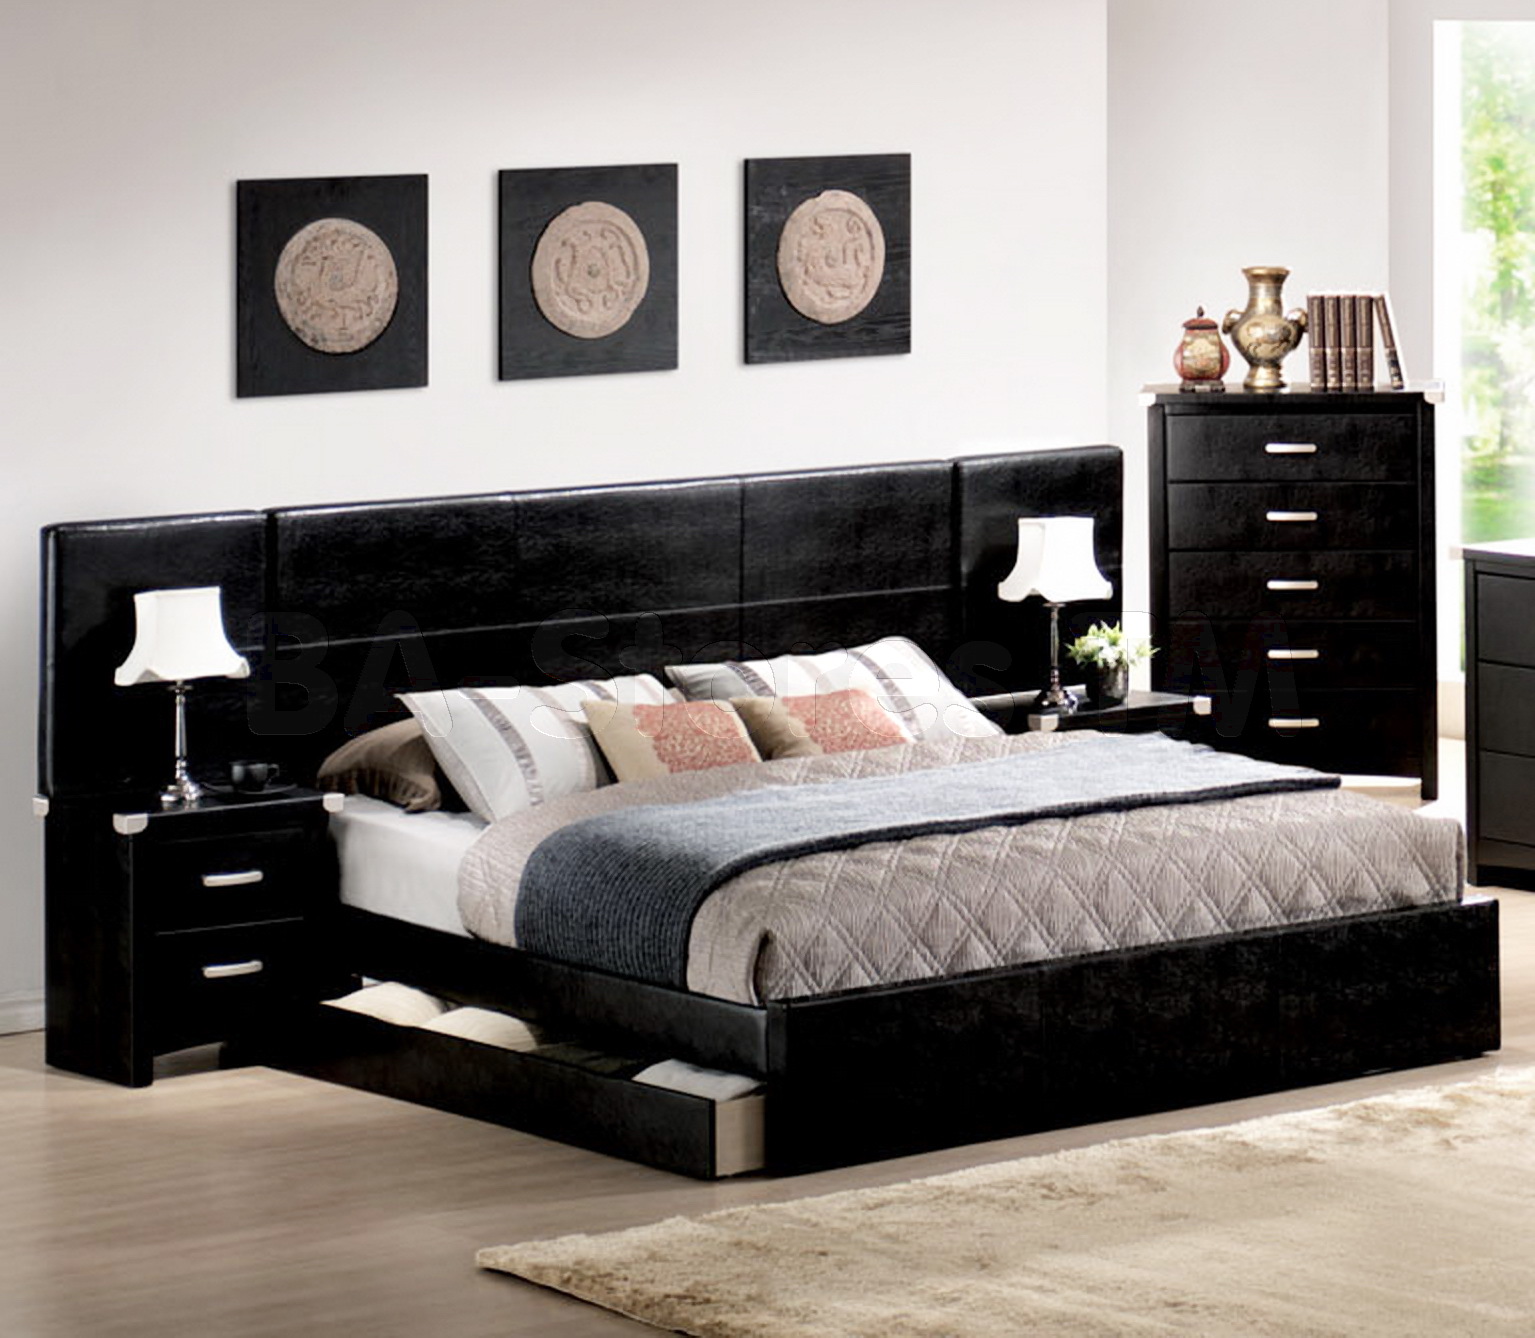 king size black bedroom furniture sets photo - 3